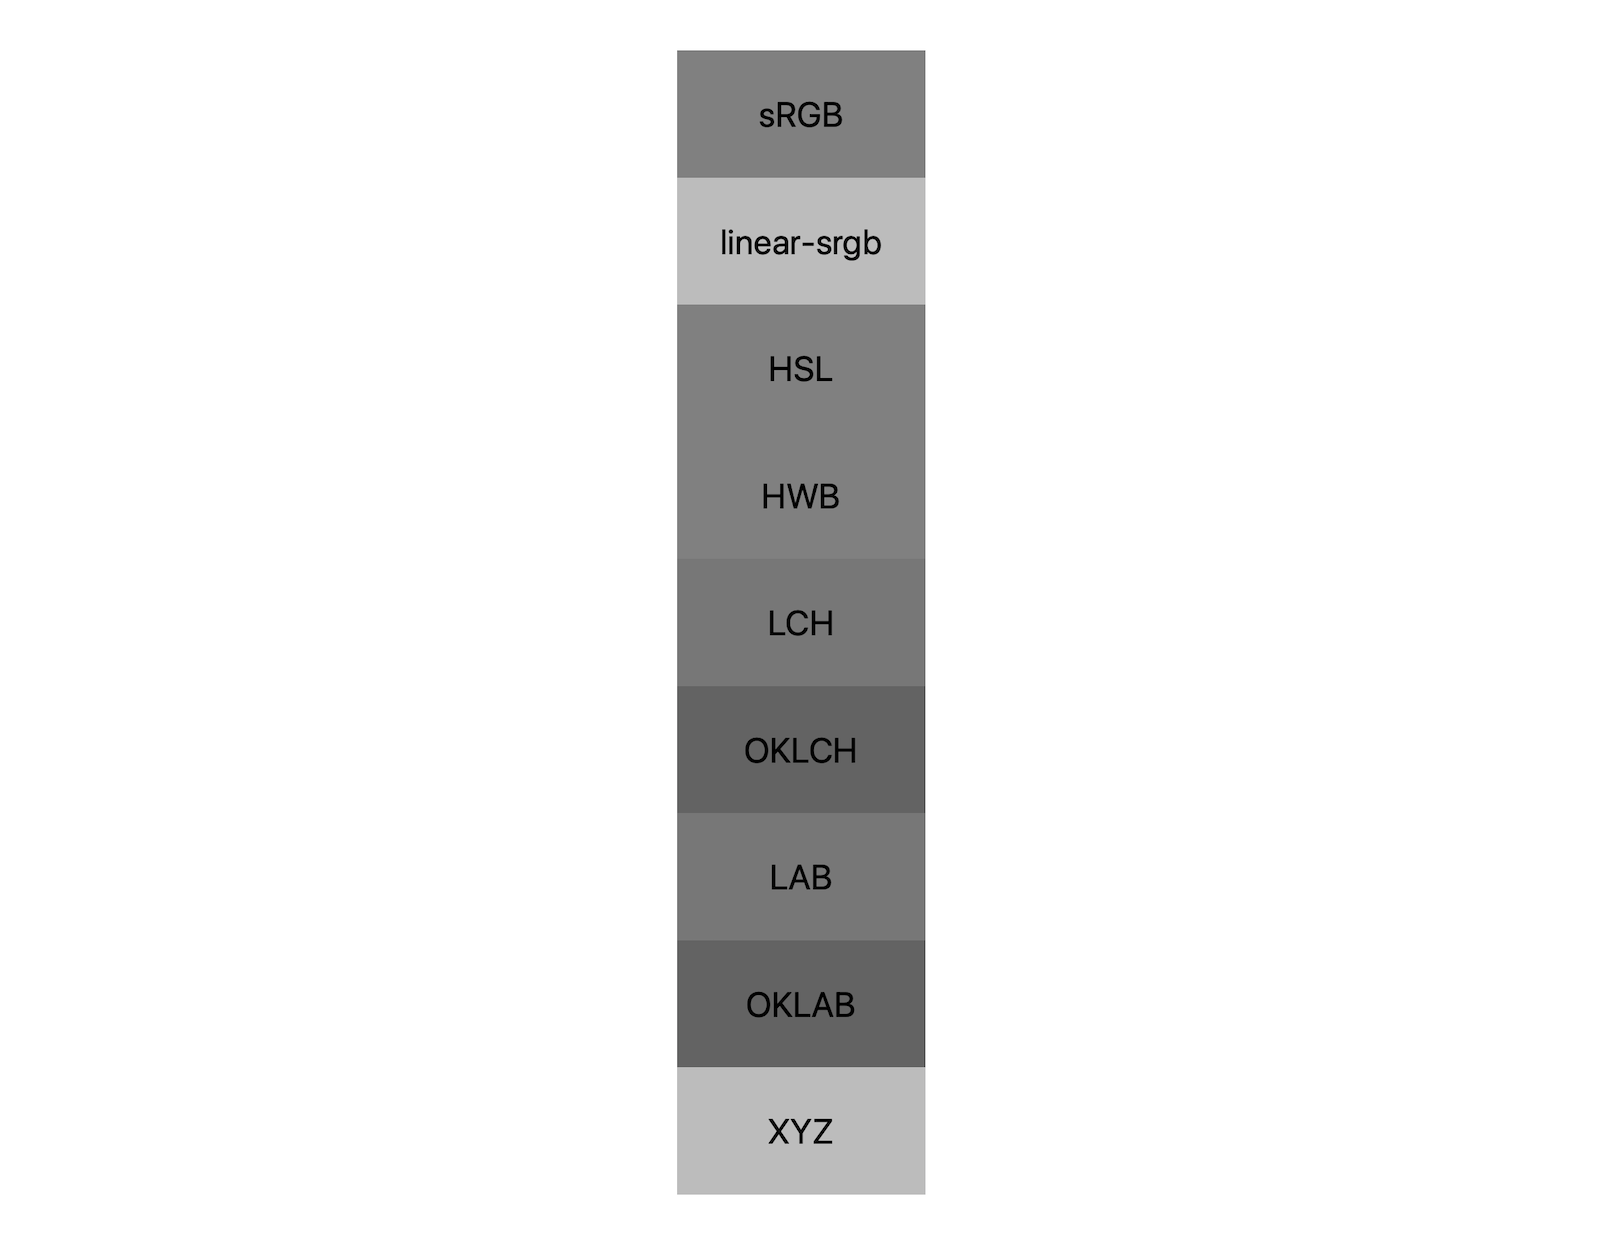 7 مساحات ألوان (srgb، وLINE-srgb، وlch، وoklch، وlab، وoklab، وxyz) تعرض كل منها نتائج مزج اللونَين الأبيض والأسود. يتم عرض 5 ظلال مختلفة تقريبًا، مما يدل على أن كل مساحة لون ستختلط إلى اللون الرمادي بشكل مختلف.